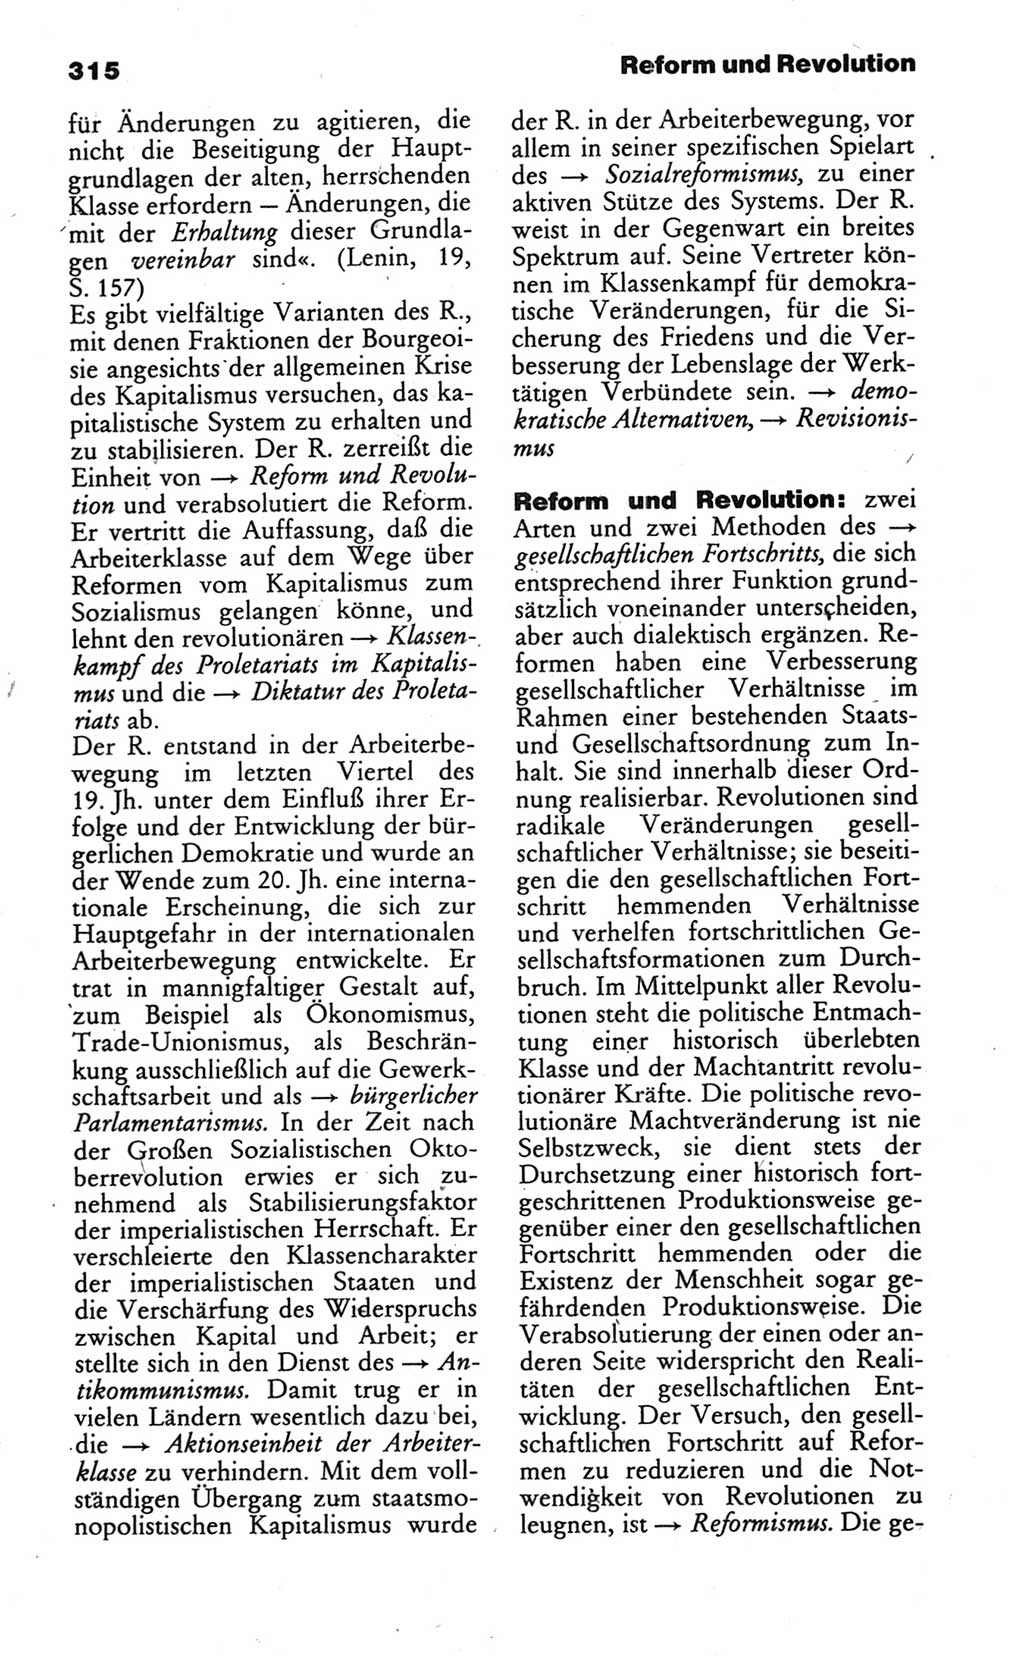 Wörterbuch des wissenschaftlichen Kommunismus [Deutsche Demokratische Republik (DDR)] 1986, Seite 315 (Wb. wiss. Komm. DDR 1986, S. 315)